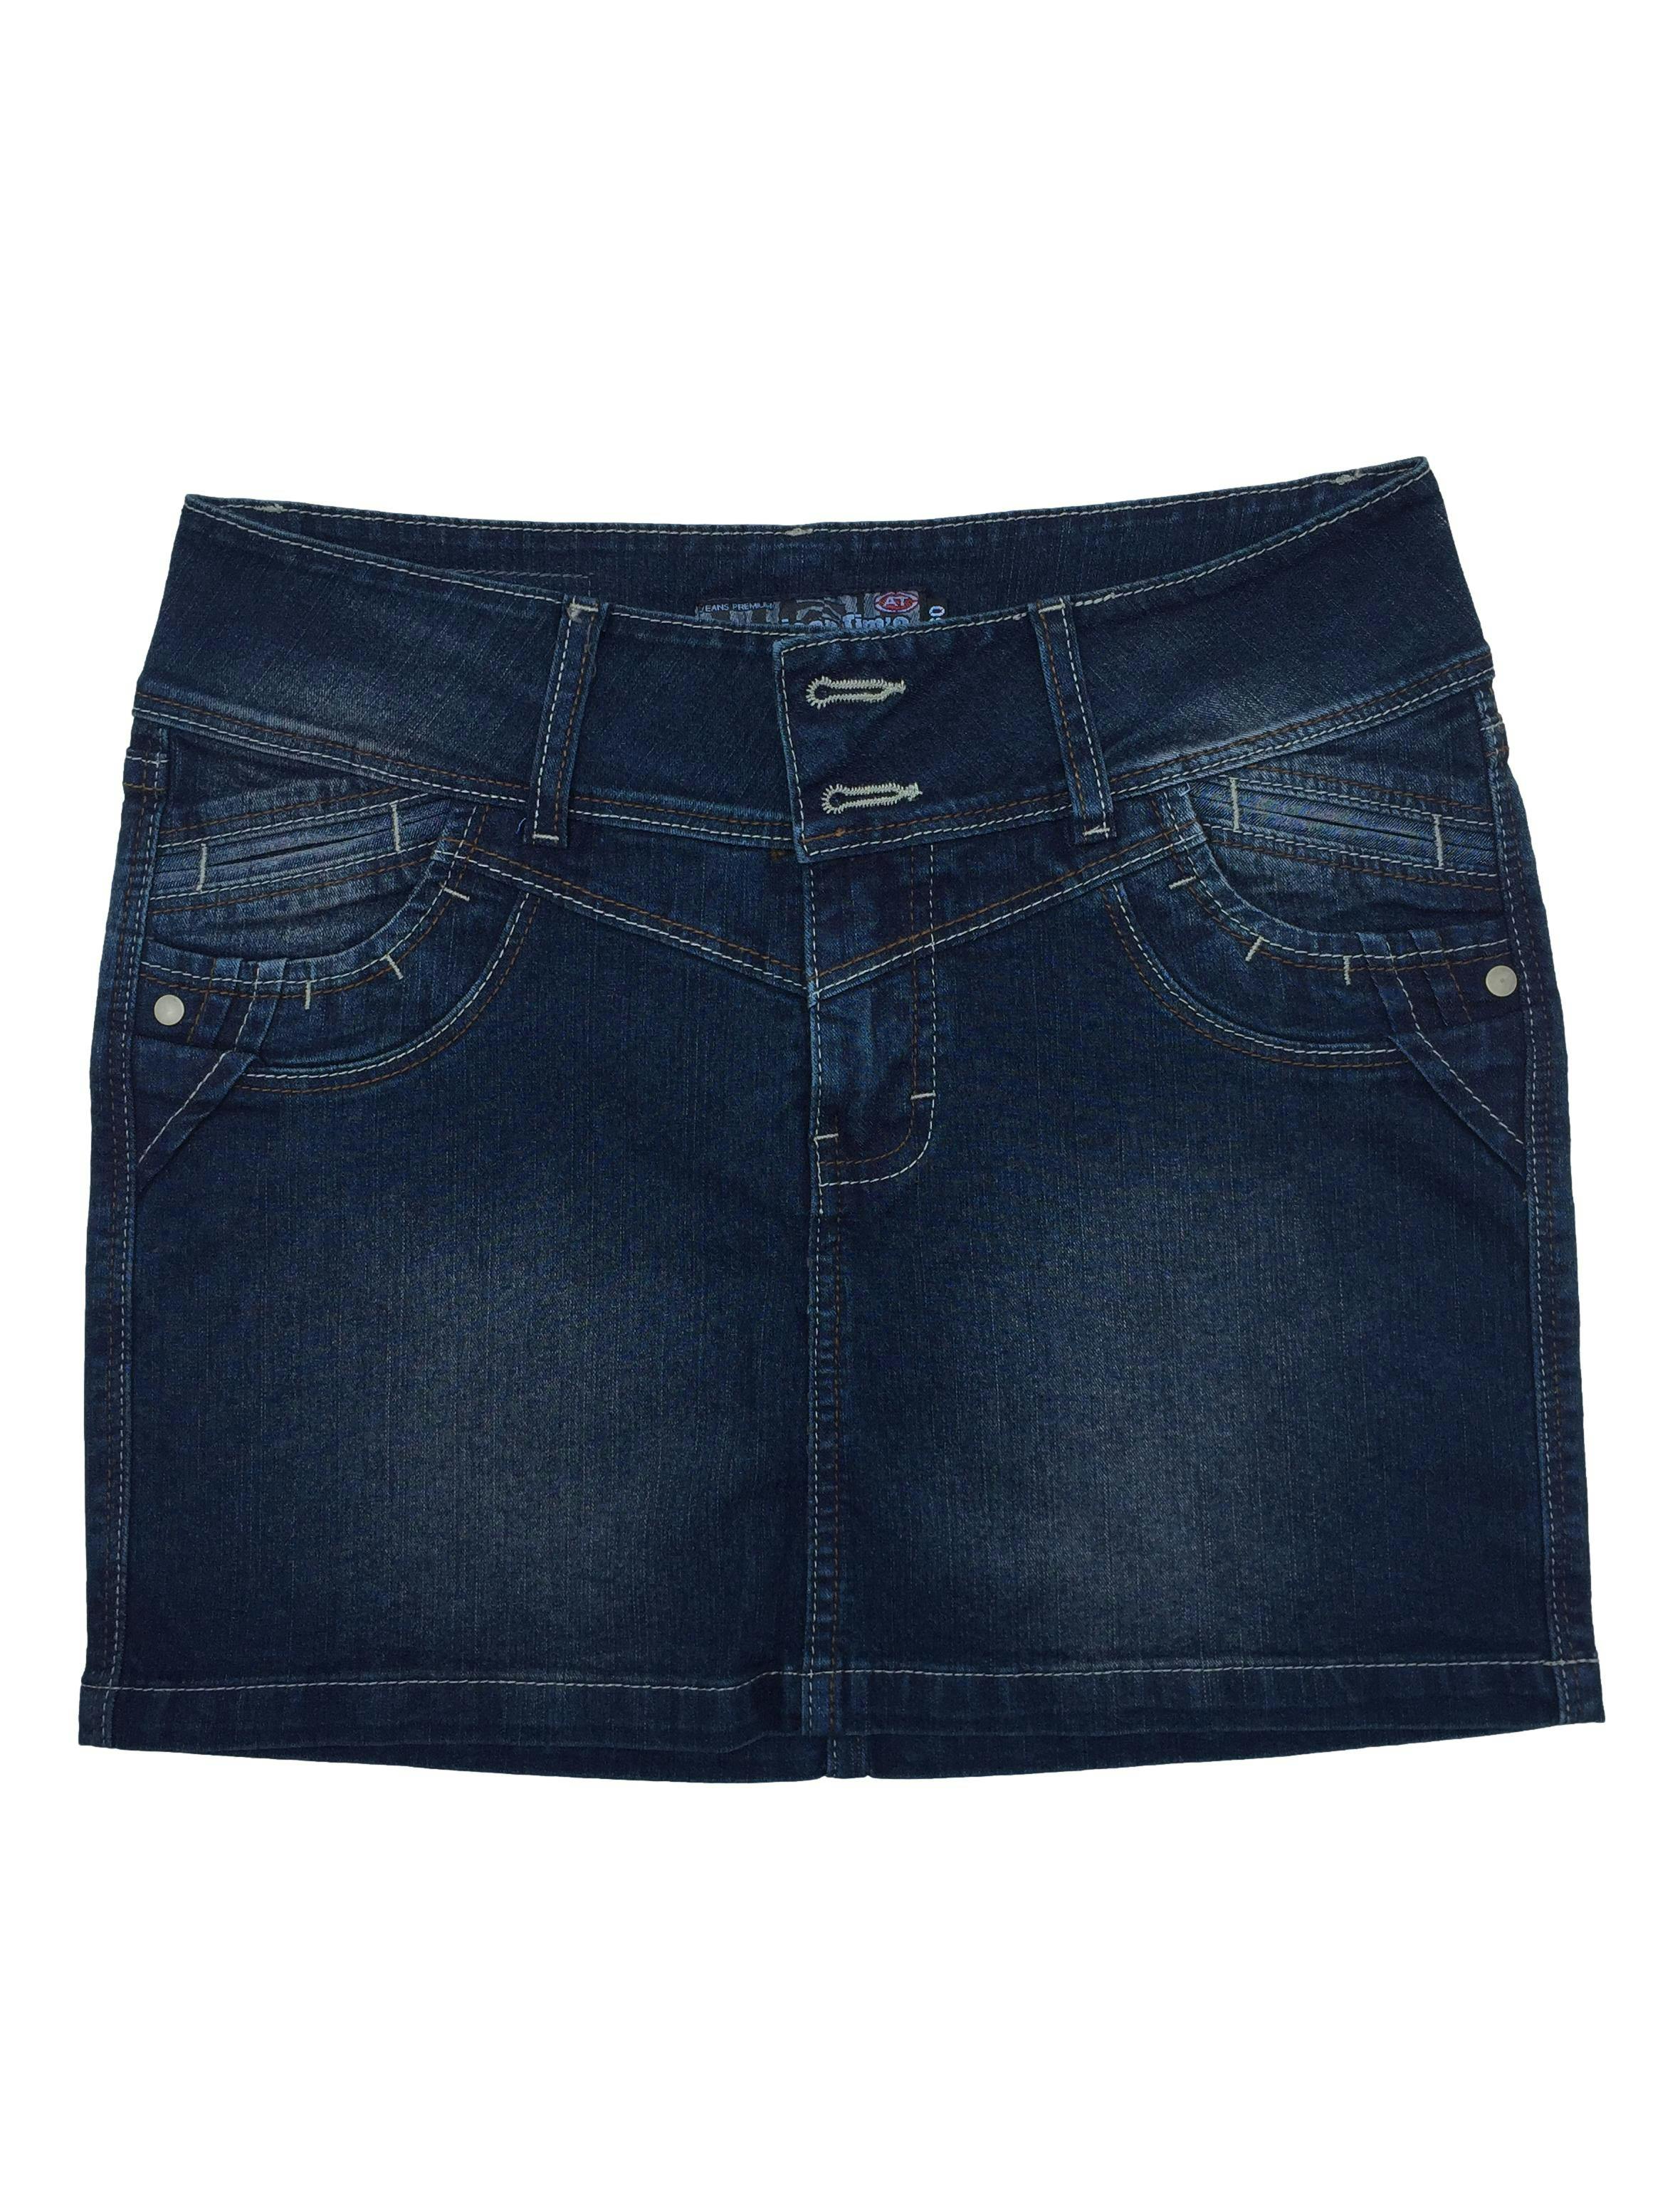 Falda jean strech con pespuntes a contraste y focalizado. Cintura 74cm Largo 37cm. Nuevo con etiqueta